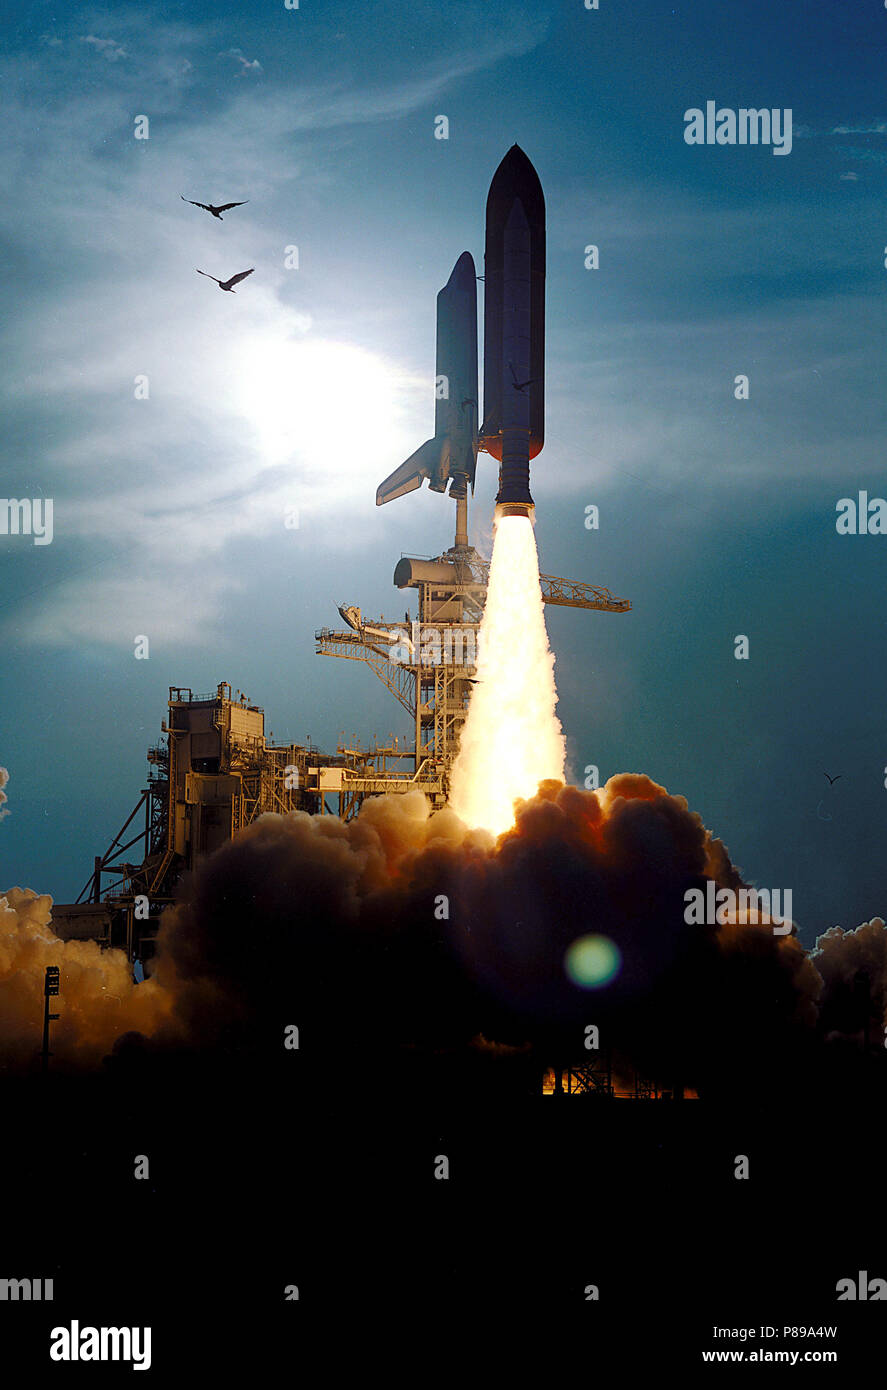 La navetta spaziale Discovery vola verso il cielo da Launch Pad 39B sulla missione STS-64 alle 6:22:35 p.m. EDT, 9 settembre 1994. A bordo sono i membri di un equipaggio di sei: Commander Richard N. Richards; Pilot L. Blaine Hammond Jr; e gli specialisti di missione Marco C. Lee, Carl J. Meade, SUSAN J. Helms e il dottor J.M. Linenger. Foto Stock